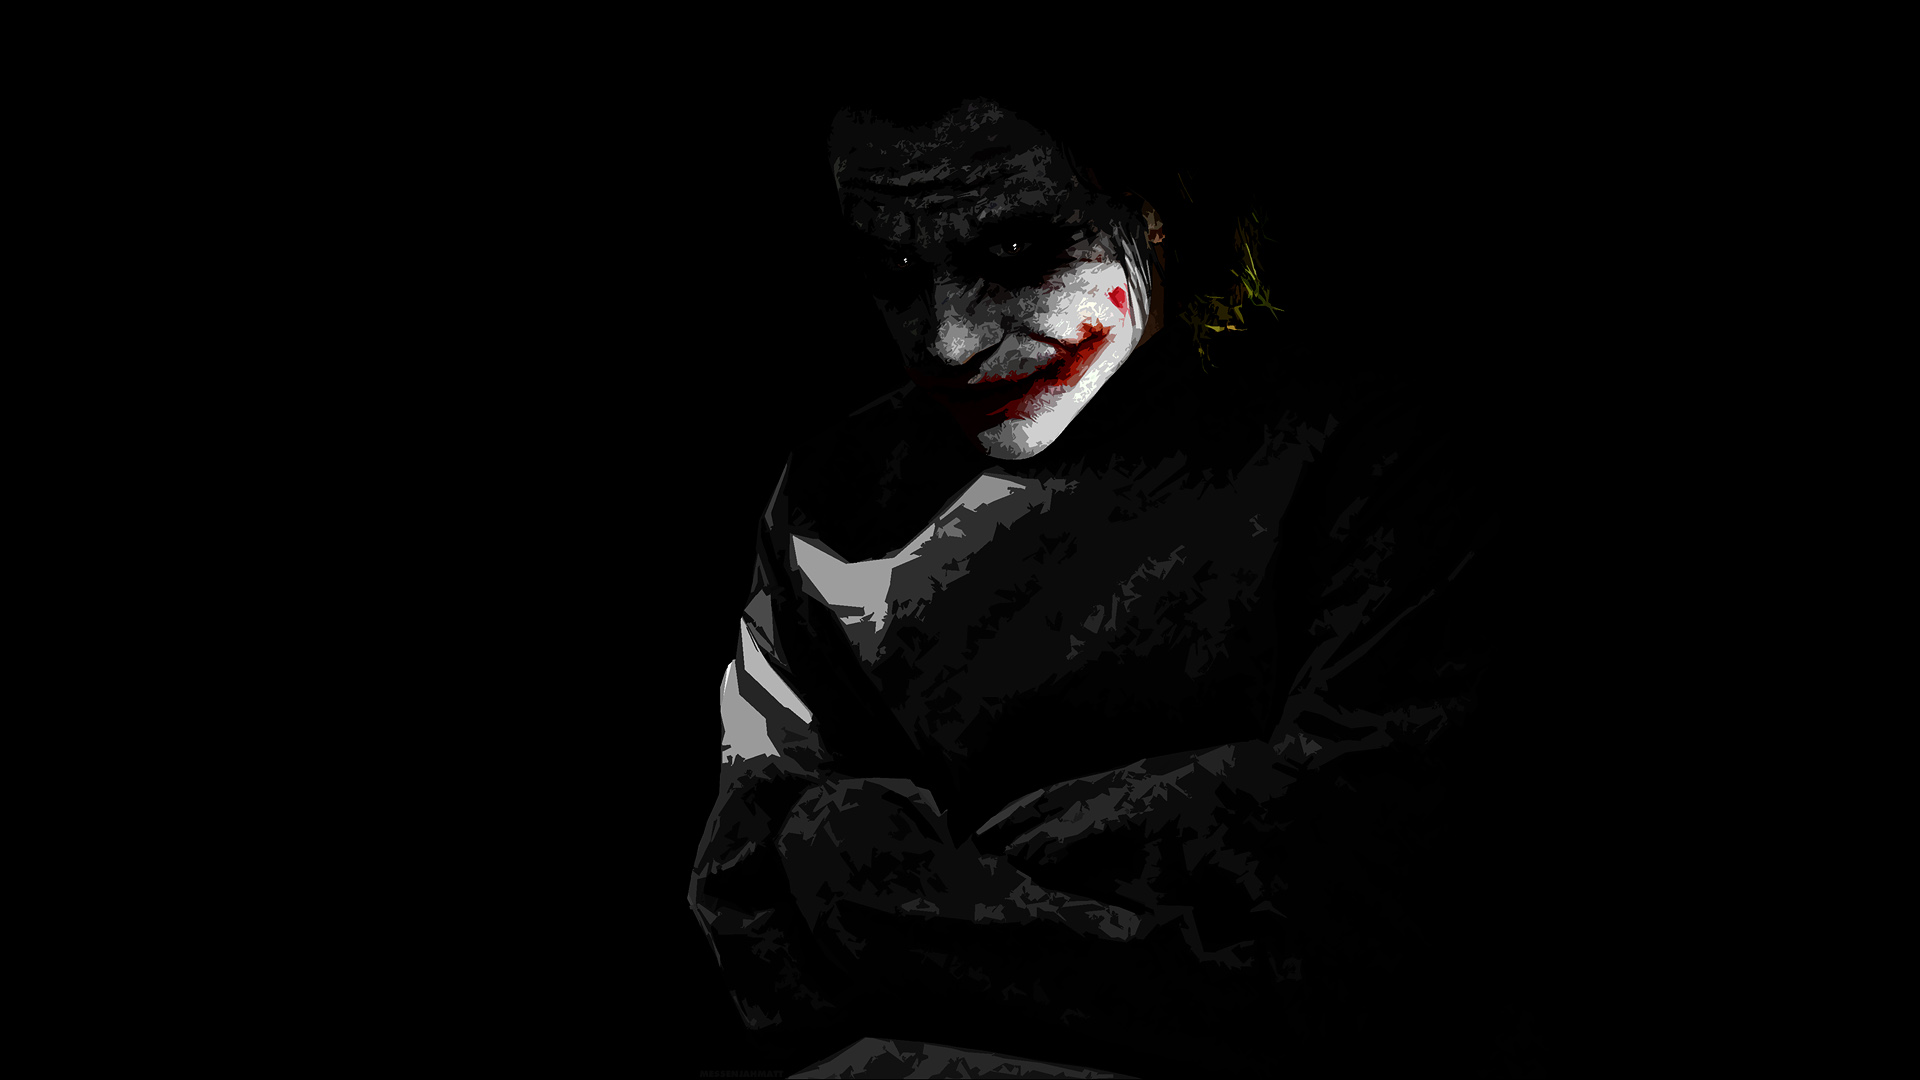 Download Gambar Mr Joker Wallpaper Hd terbaru 2020